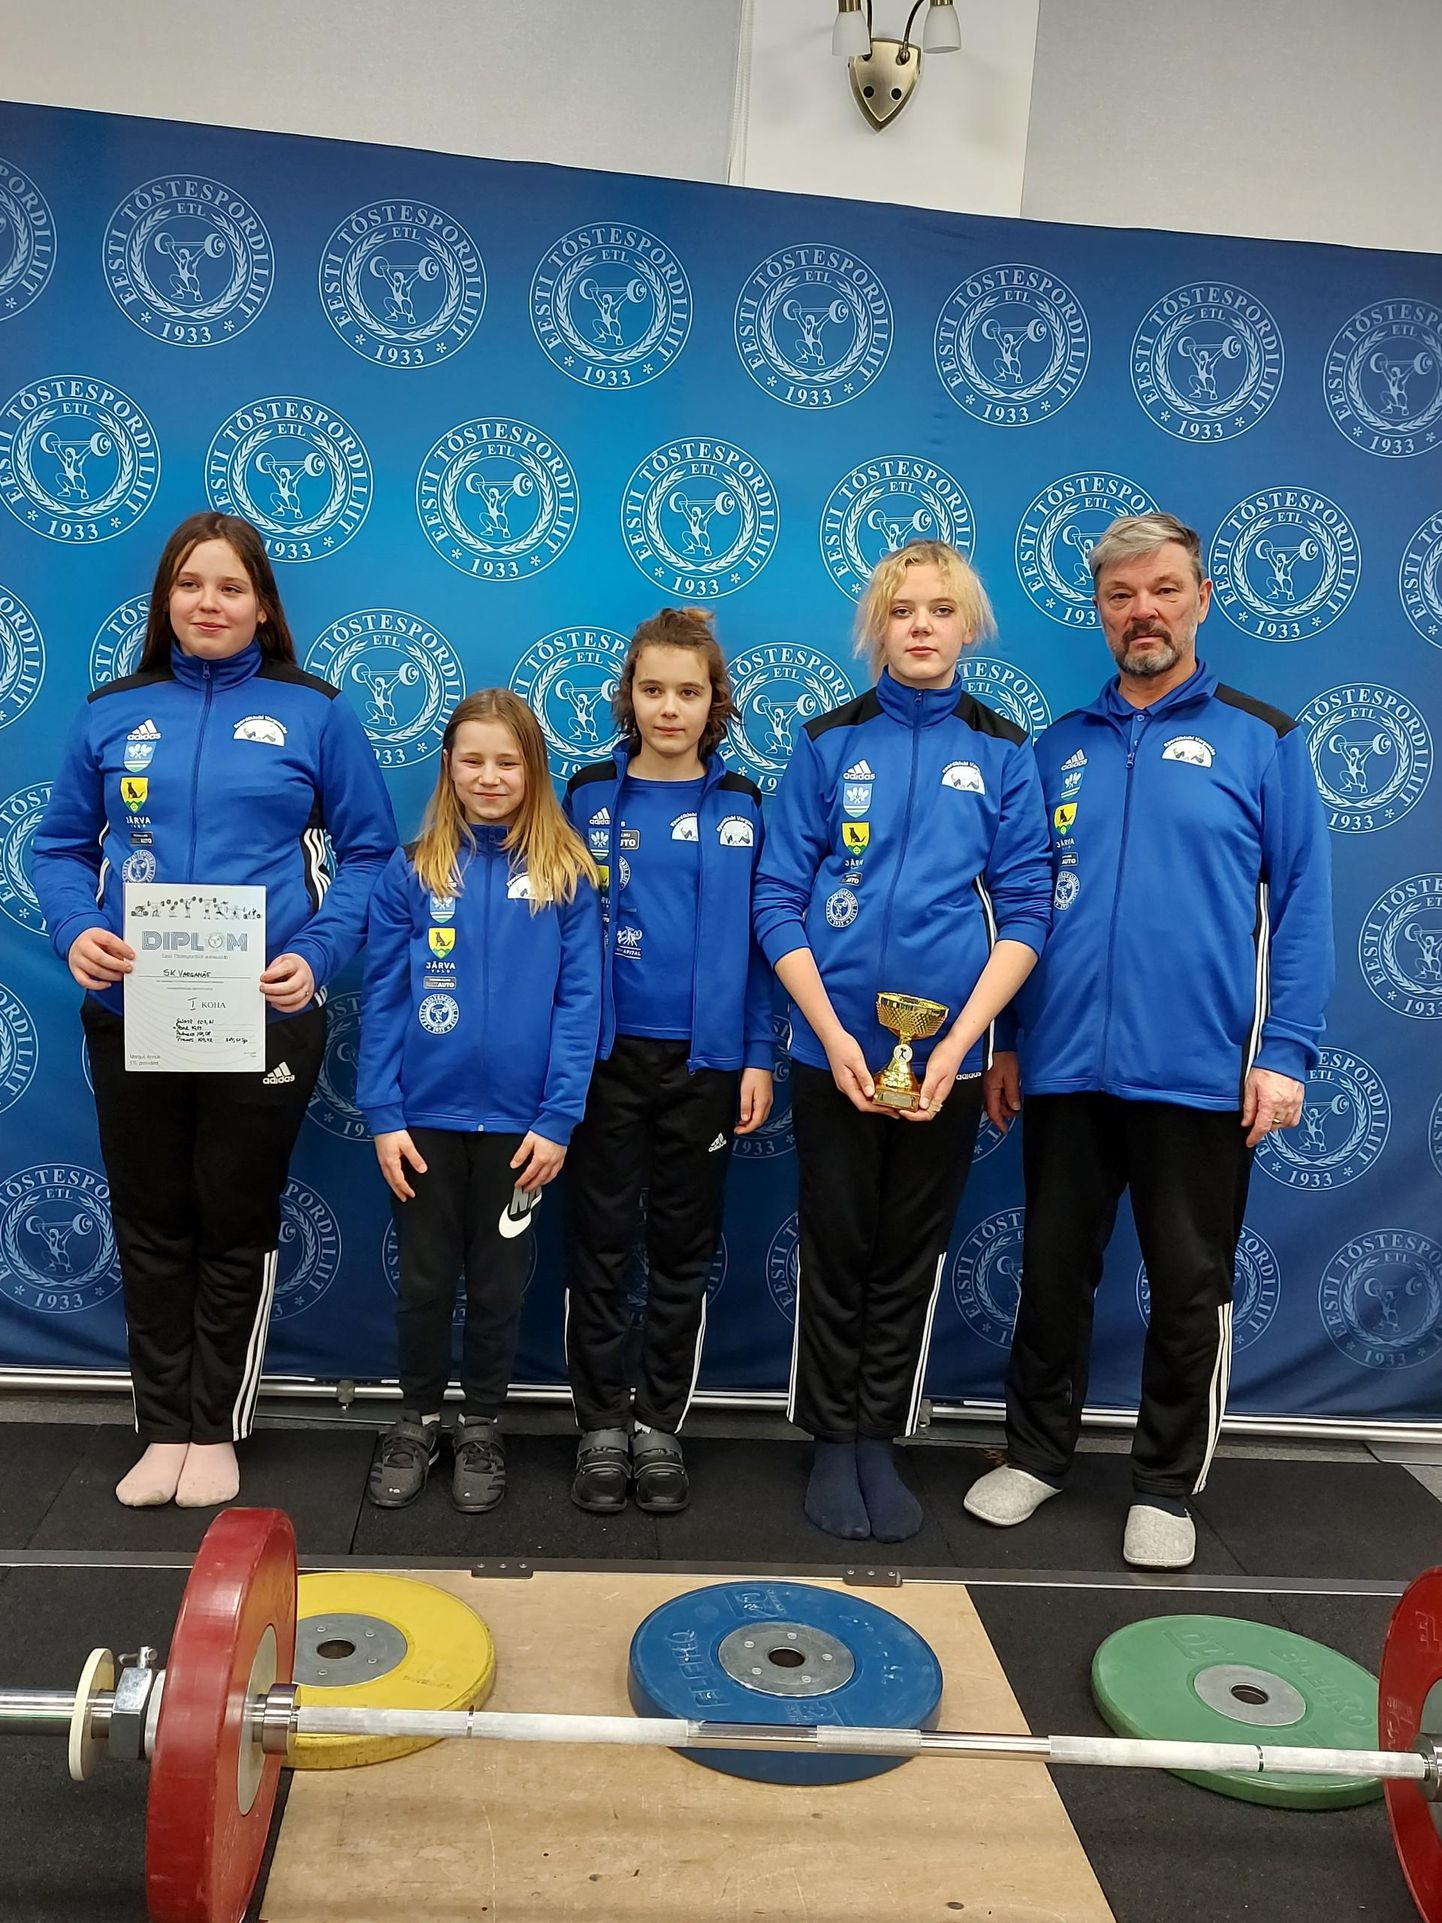 SK Vargamäe tüdrukutest noortõstjad tulid Eesti U13 meistrivõistlustel esimeseks, neid treenib Ahti Uppin (paremal).